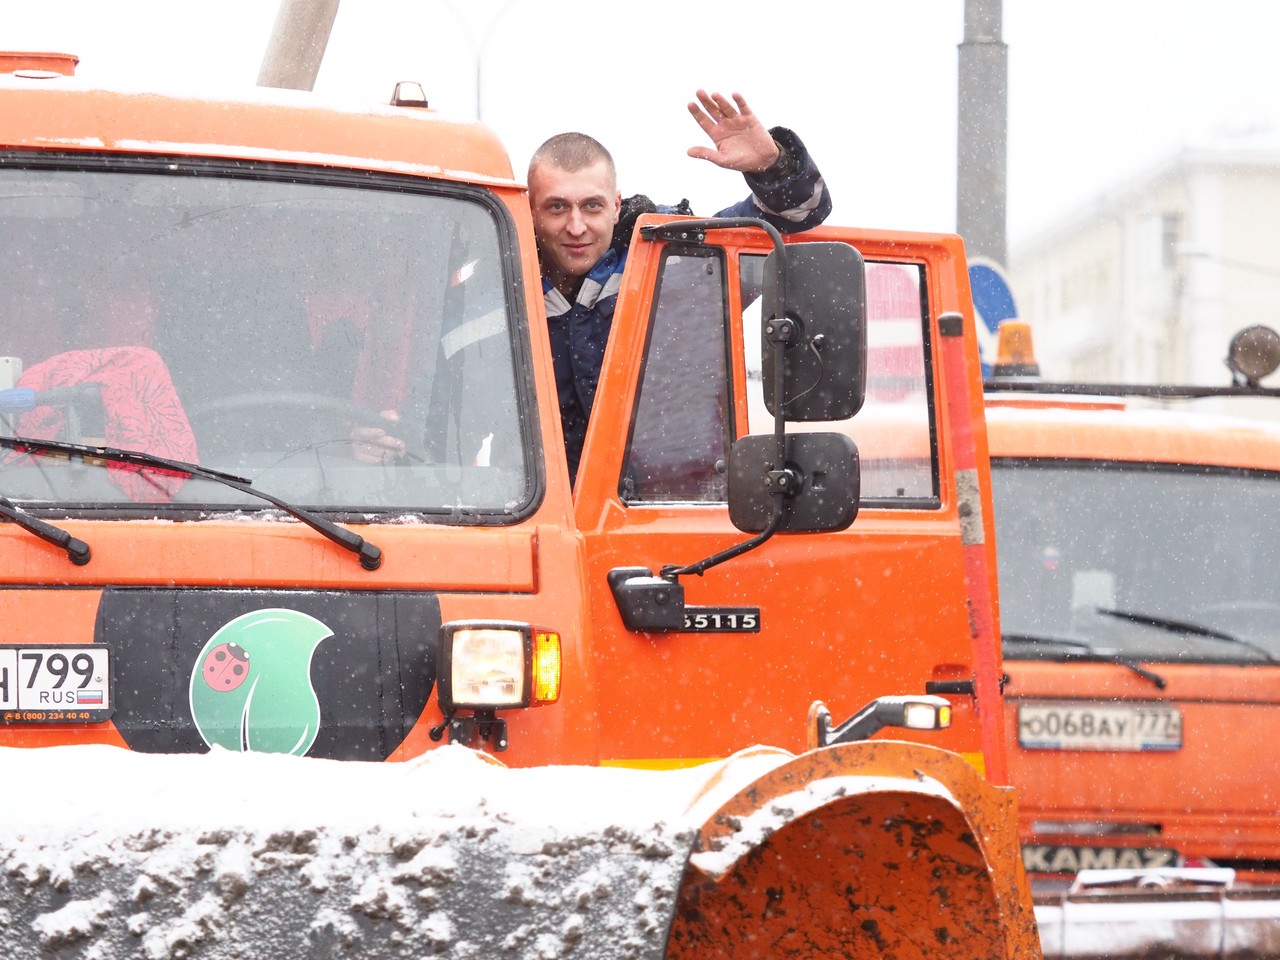 Городские службы ликвидируют последствия снегопада в Москве